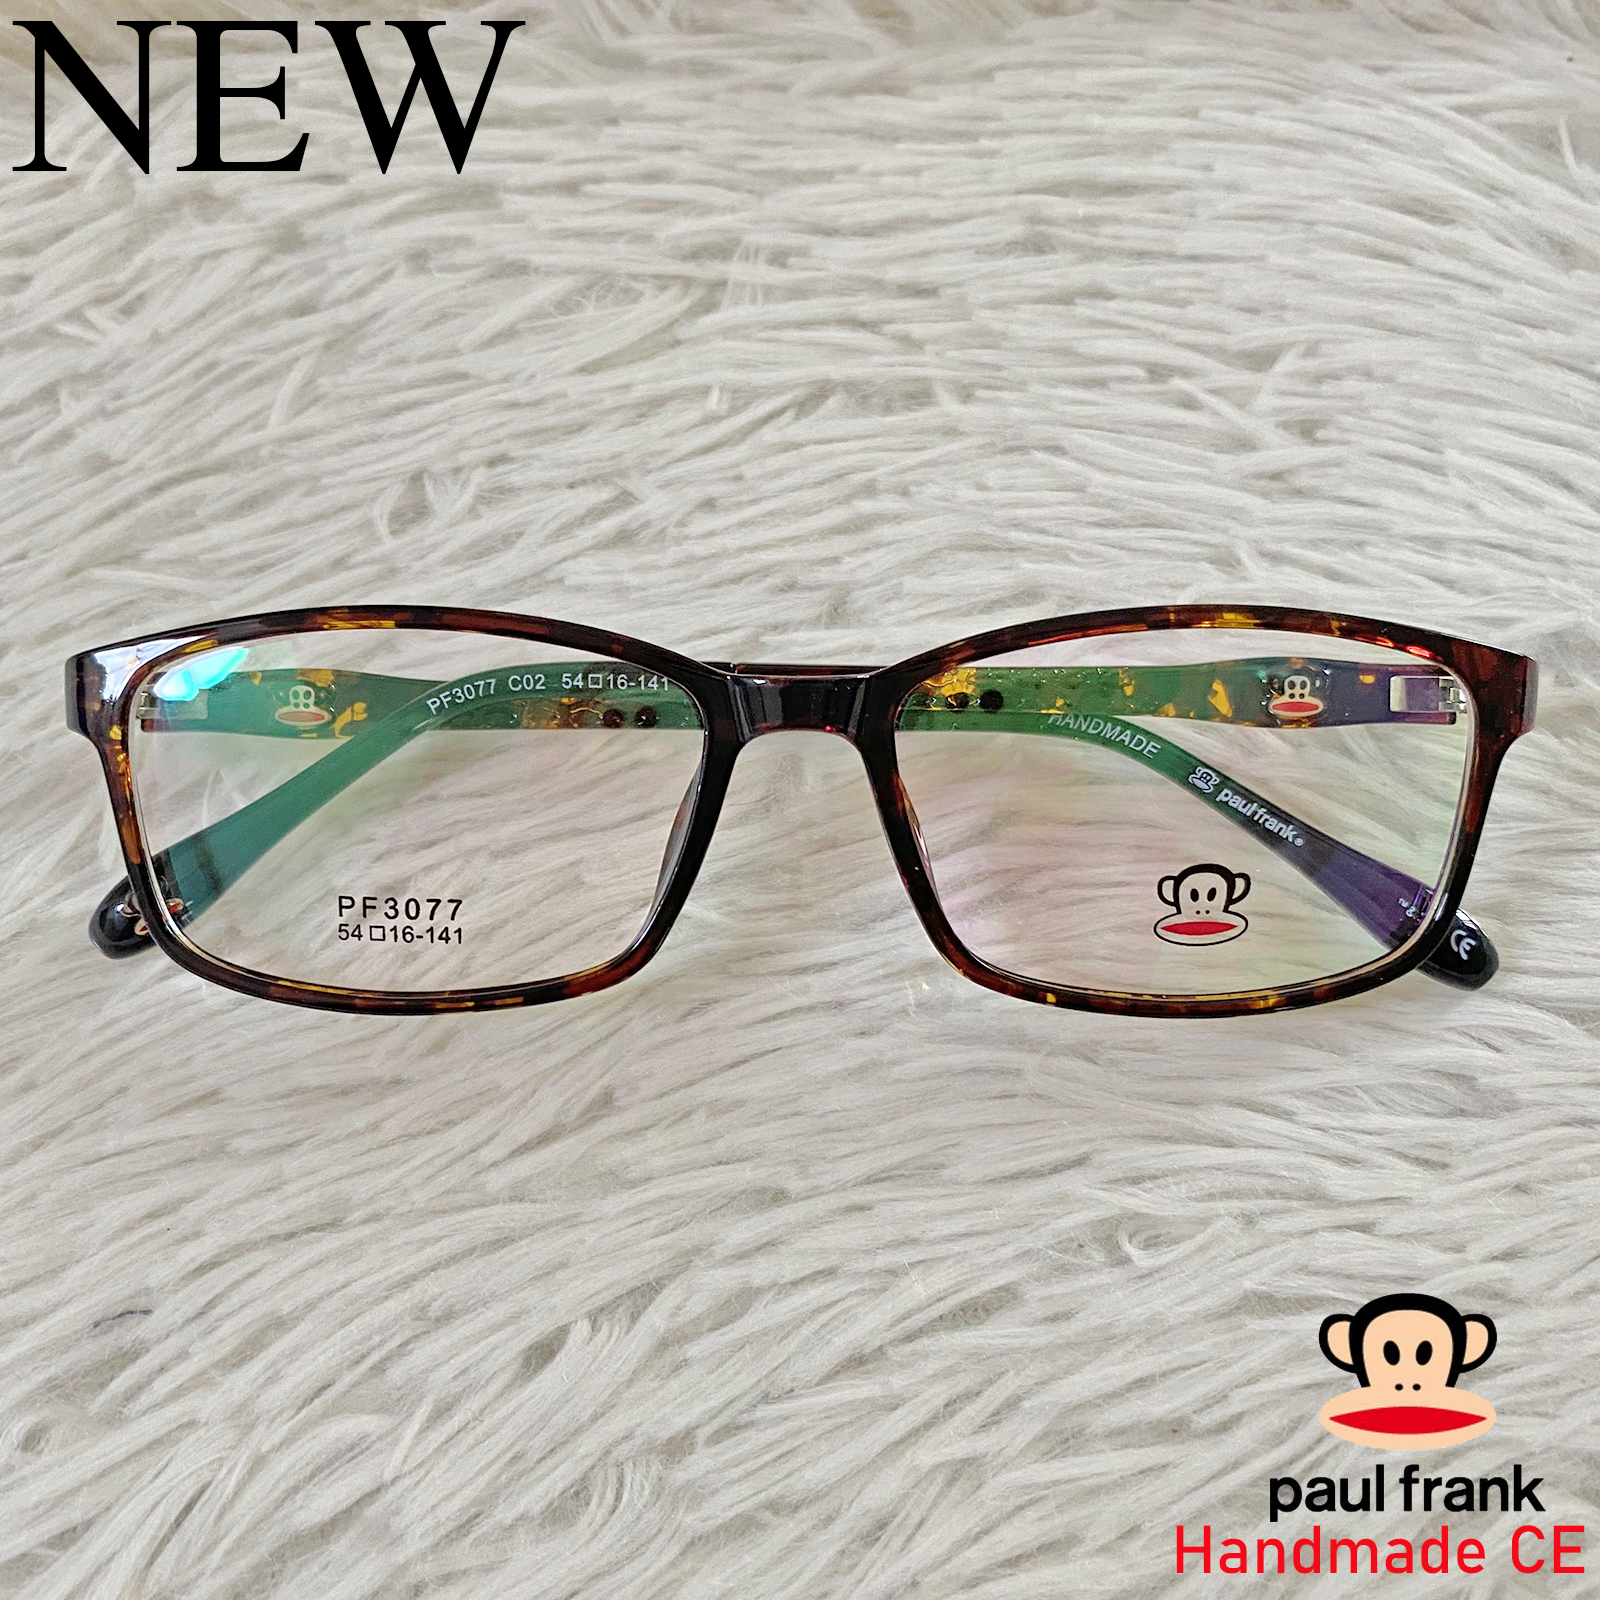 Paul Frank แว่นตาสำหรับตัดเลนส์ สายตา กรอบแว่นตา ชาย หญิง Fashion รุ่น 3077 สีน้ำตาลกละ กรอบเต็ม ทรงรี ขาข้อต่อ วัสดุ TR 90 รับตัดเลนส์ทุกชนิด